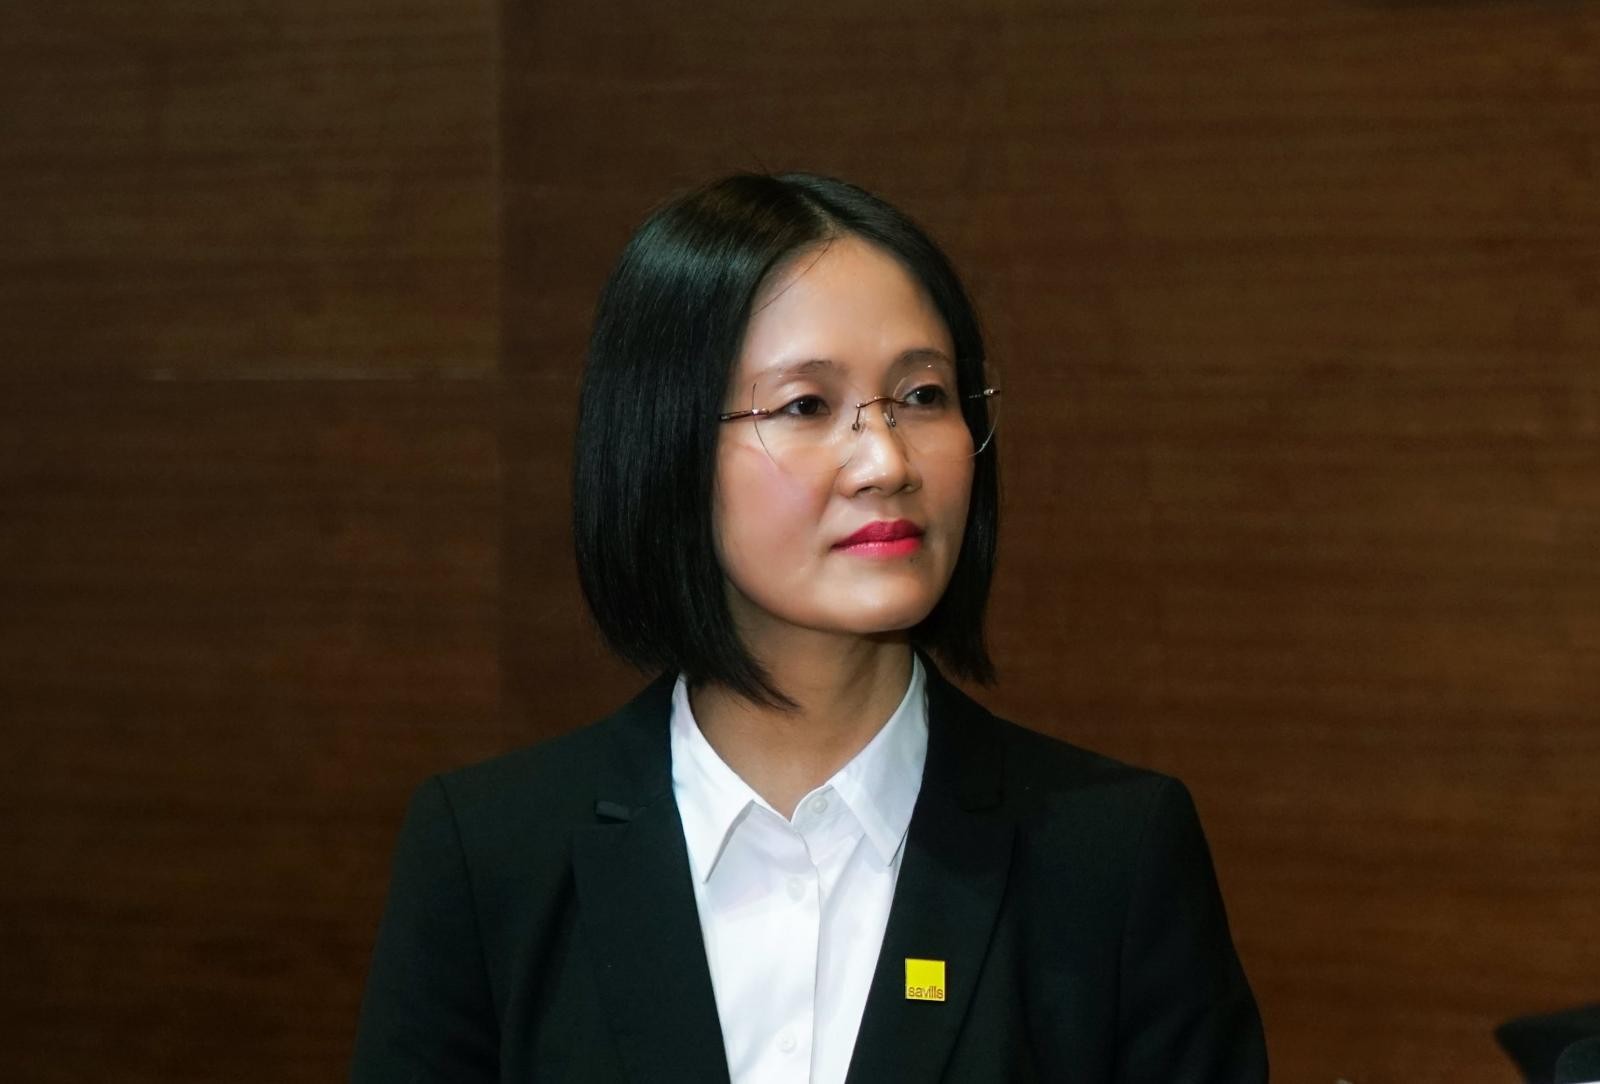 
Bà Đỗ Thu Hằng, Giám đốc cấp cao, Bộ phận nghiên cứu Savills Hà Nội
